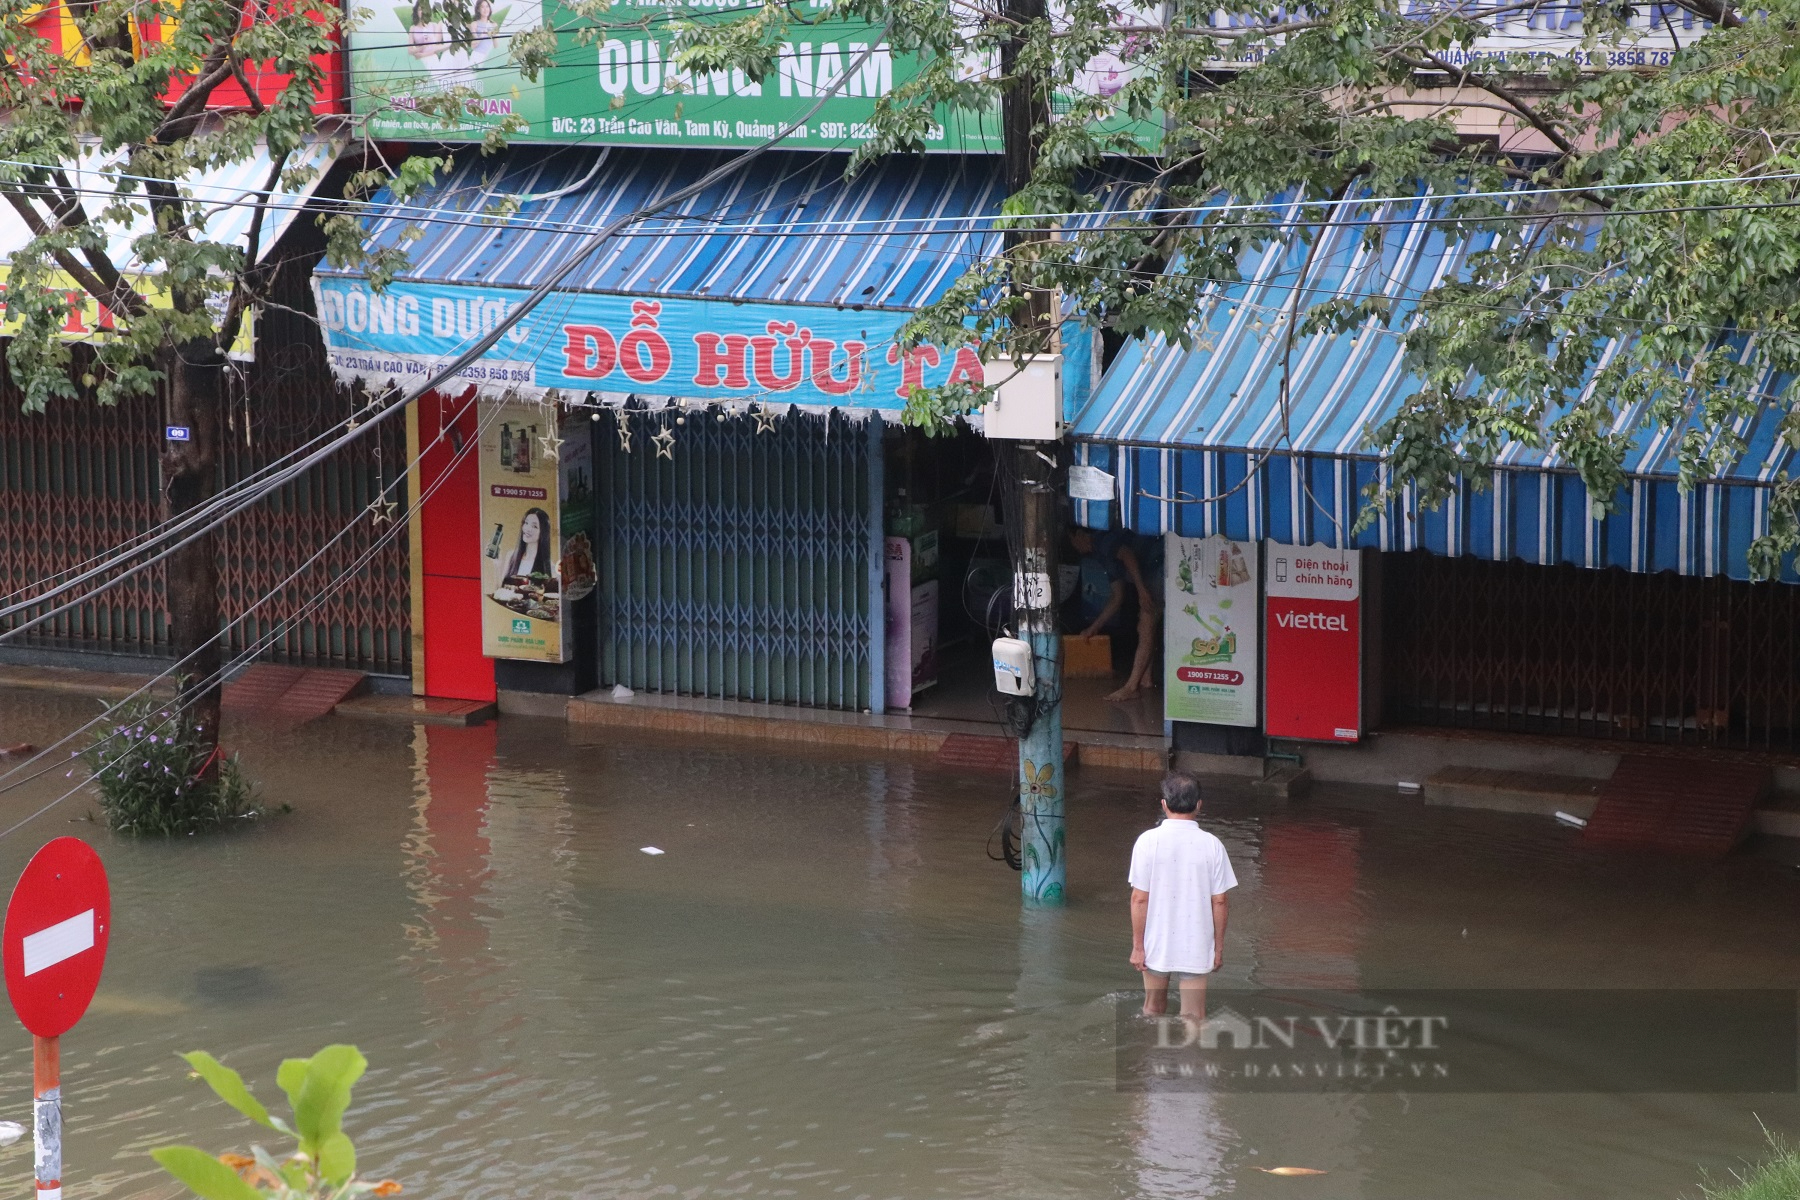 Quảng Nam: Người dân dùng ghe, thuyền di chuyển giữa phố mùa lũ lụt - Ảnh 3.